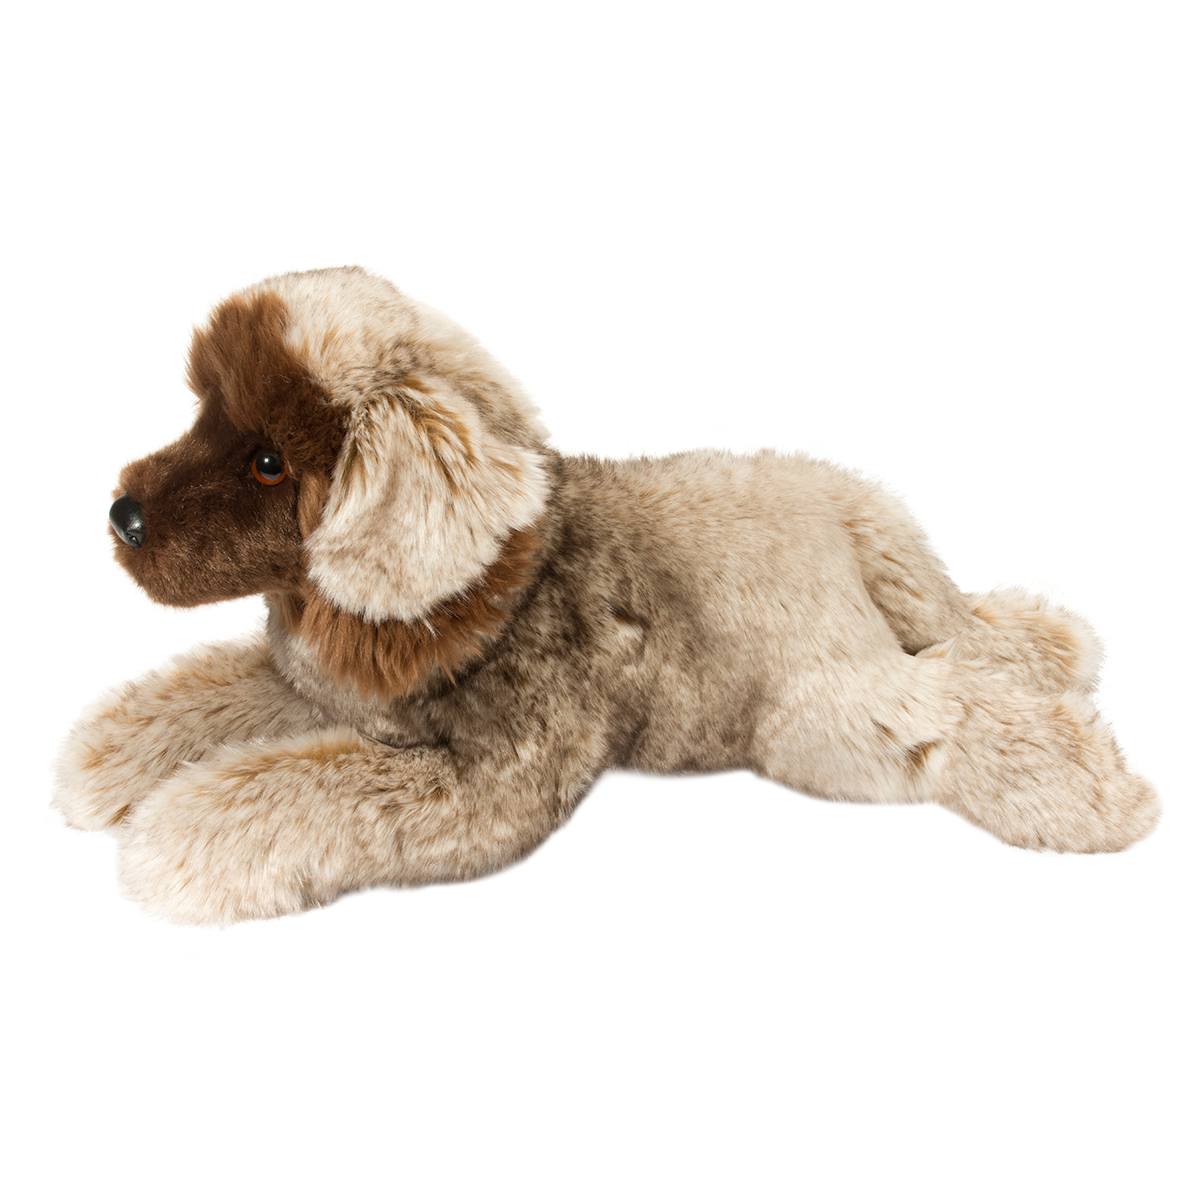 THOR the Plush LEONBERGER Dog Stuffed Animal by Douglas Cuddle Toys #2455 